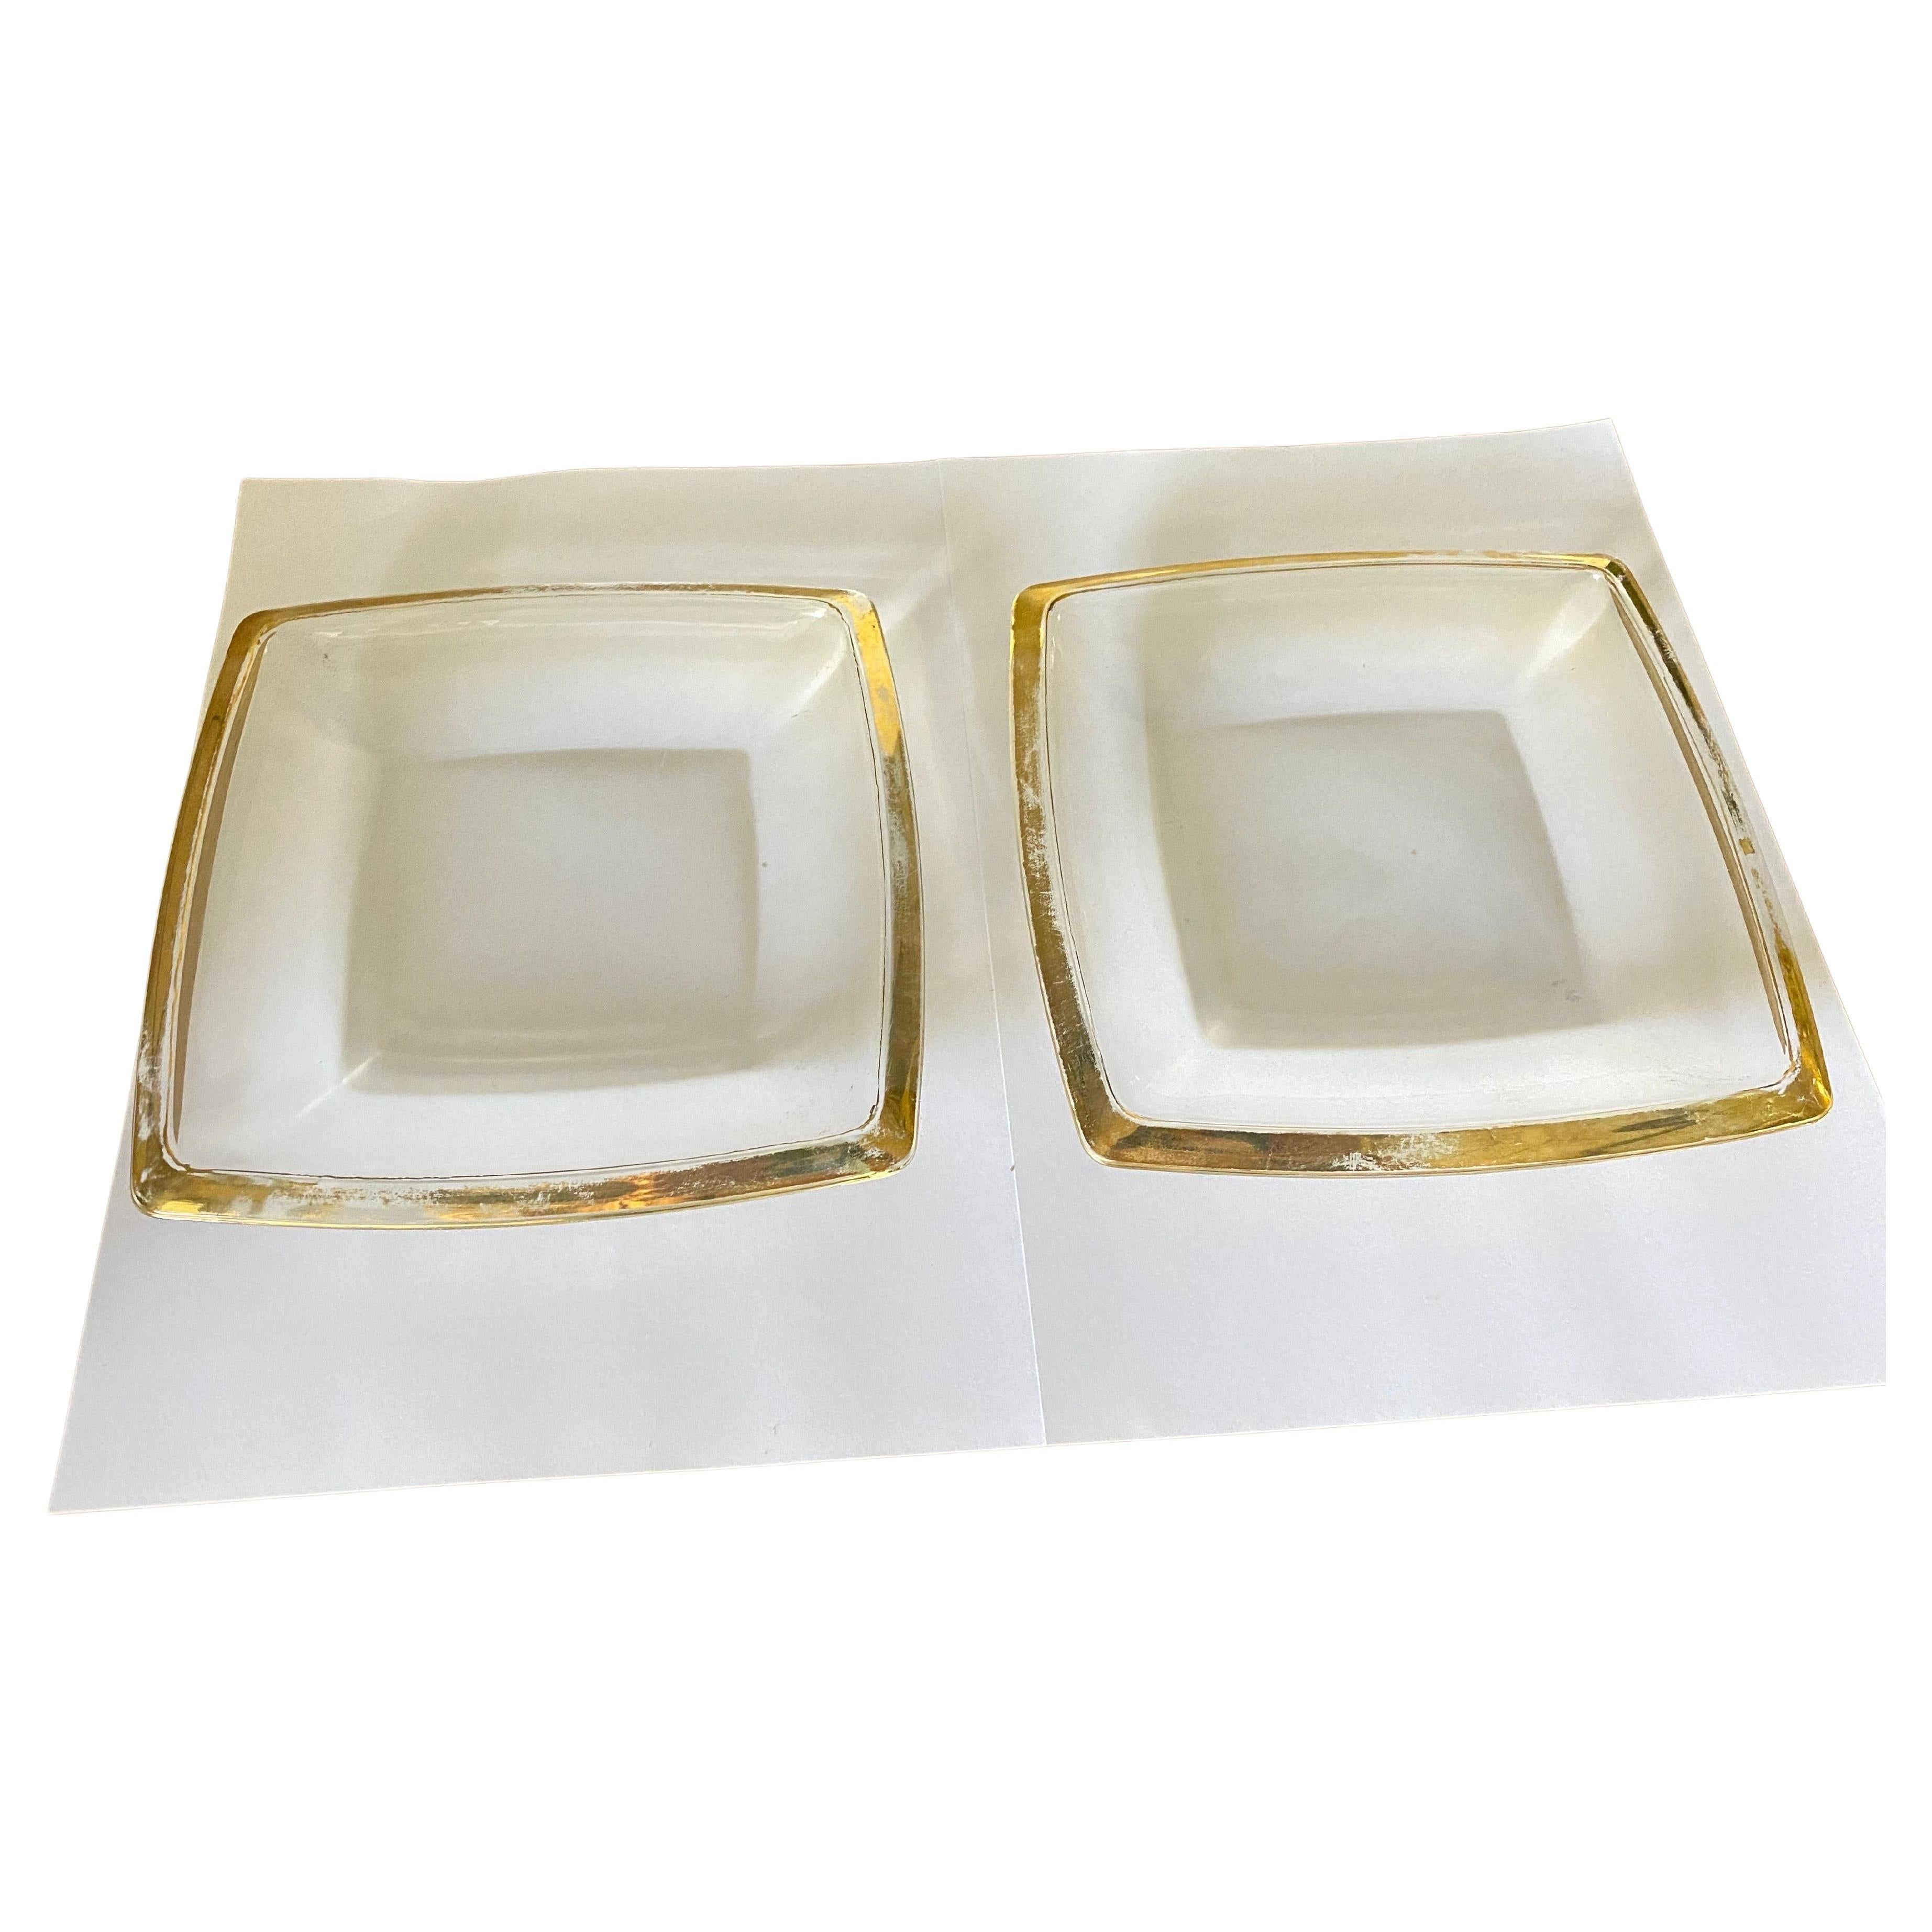 Diese vide poche oder ashtraye in Glas. Sie wurde um 1970 in Frankreich durchgeführt.
Sie sind quadratisch geformt  mit goldenen Rändern.
Transparentes Gelb  und grüner Farbe.